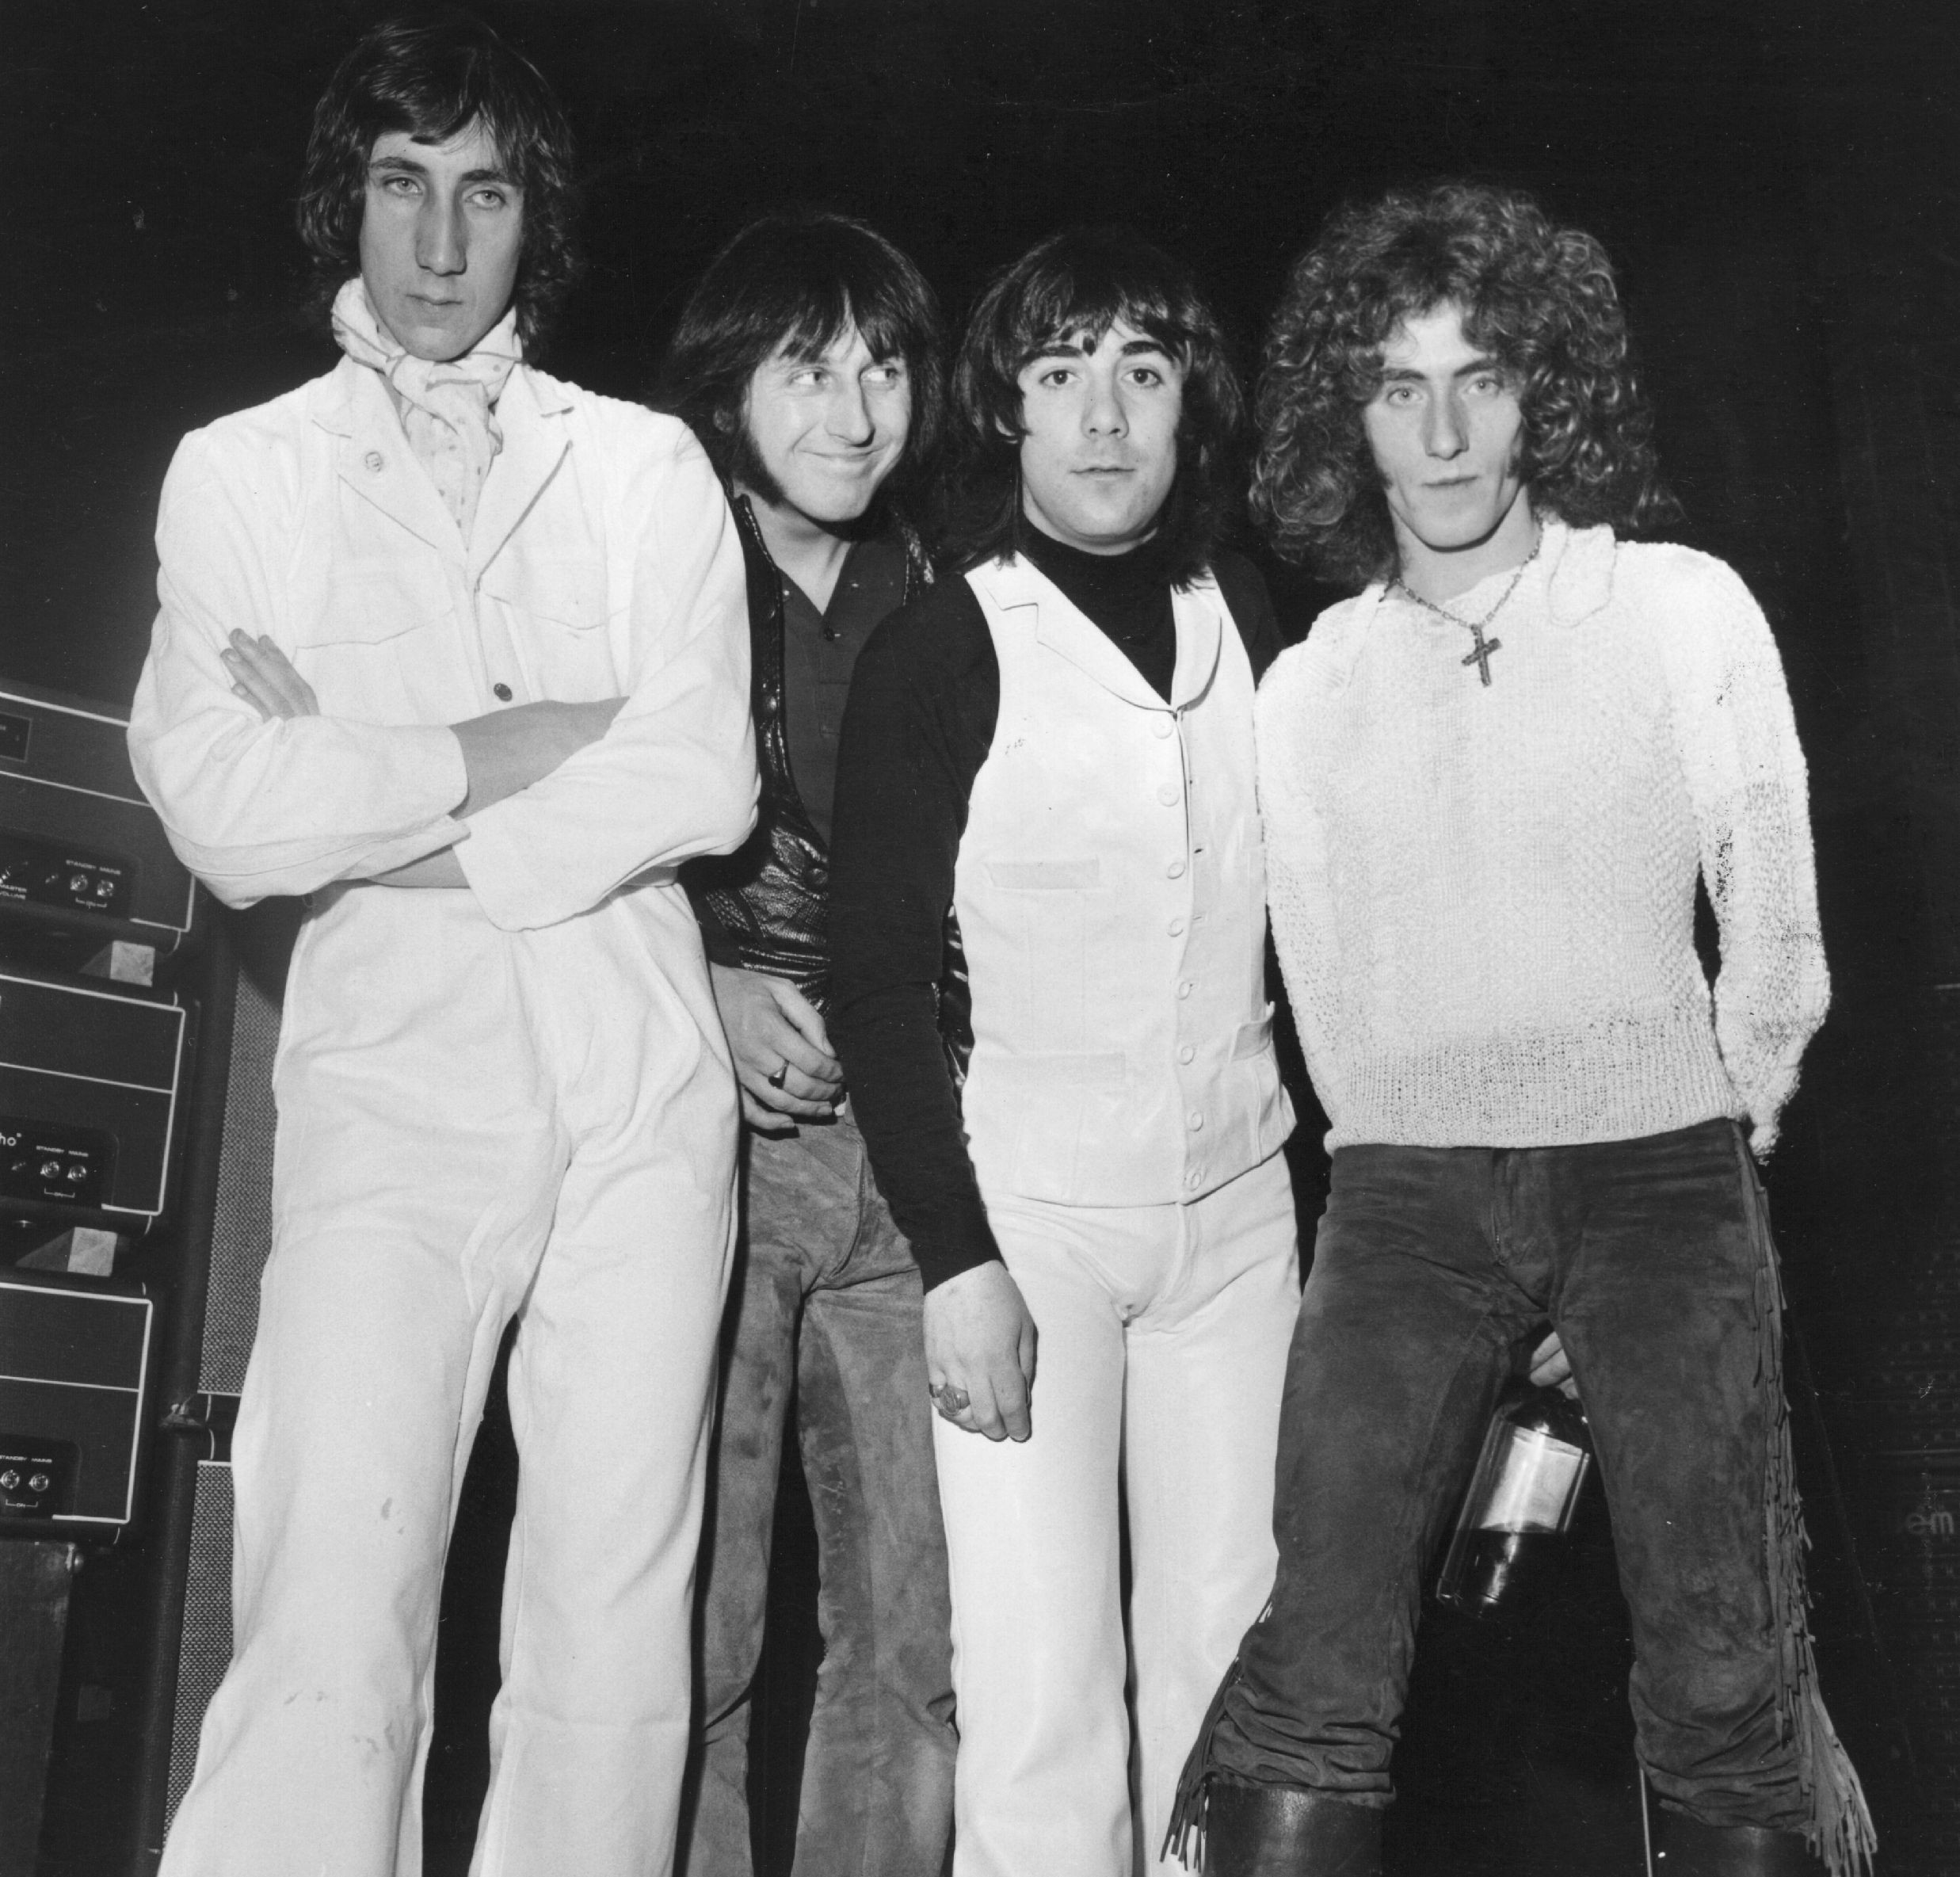 Os músicos Roger Daltrey e Pete Townshend com seus colegas do The Who em foto do início de carreira da banda (Foto: Getty Images)